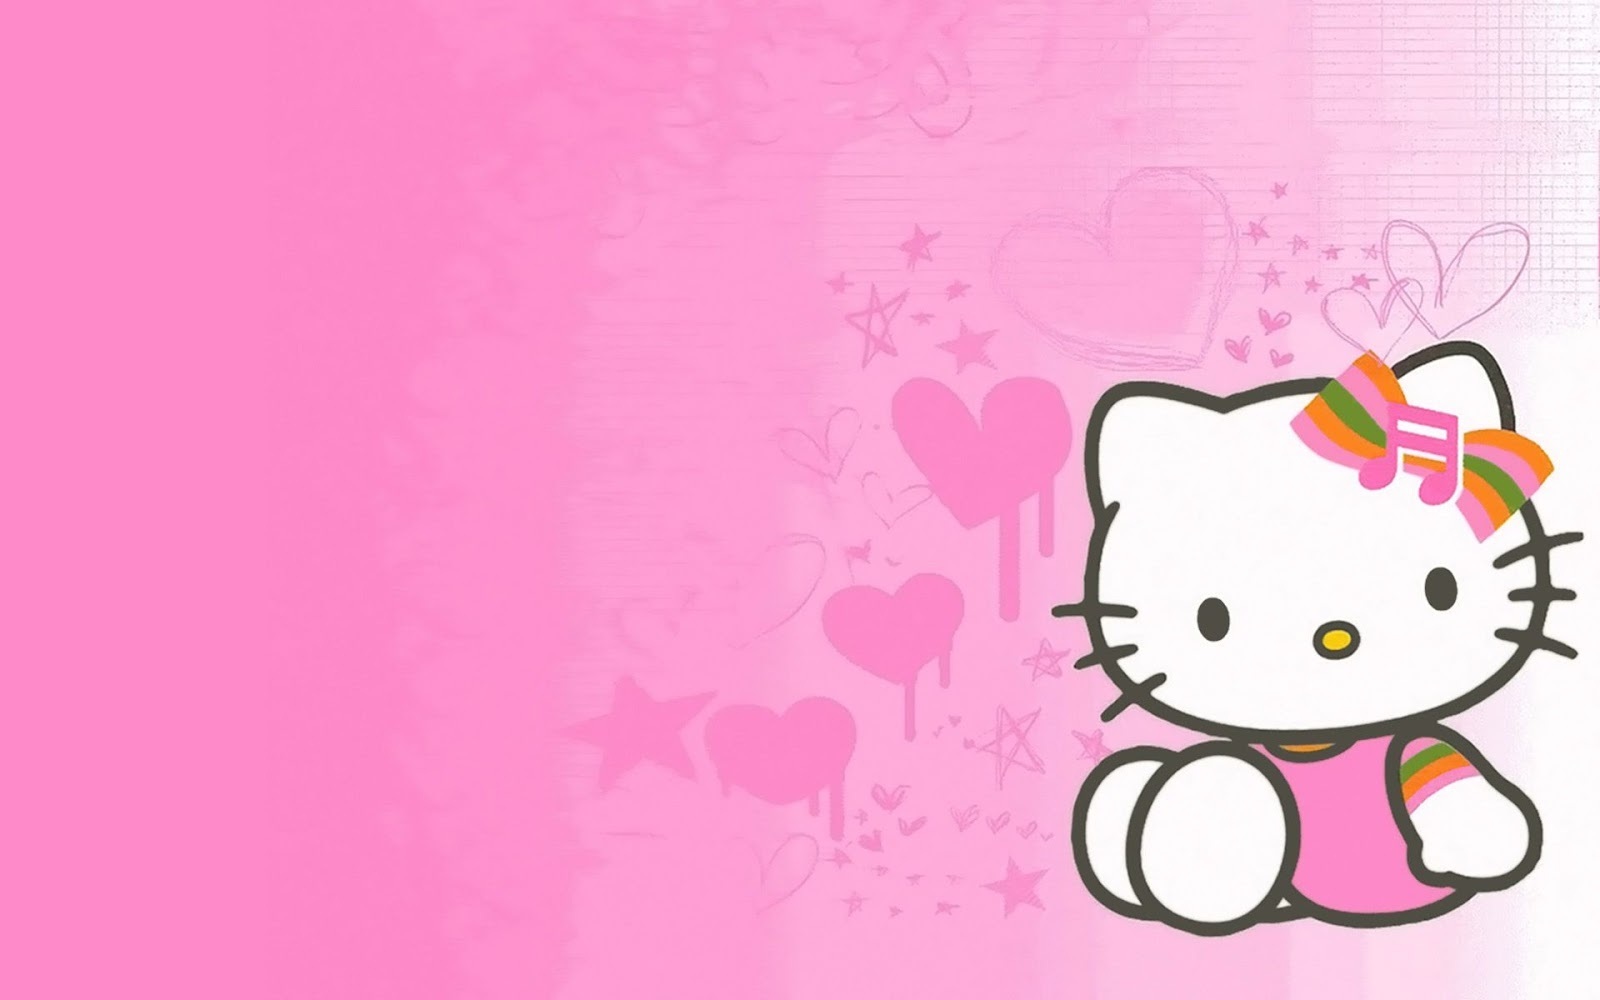 Hình ảnh Hello Kitty đẹp nhất | Hello kitty backgrounds, Hello kitty  pictures, Hello kitty images